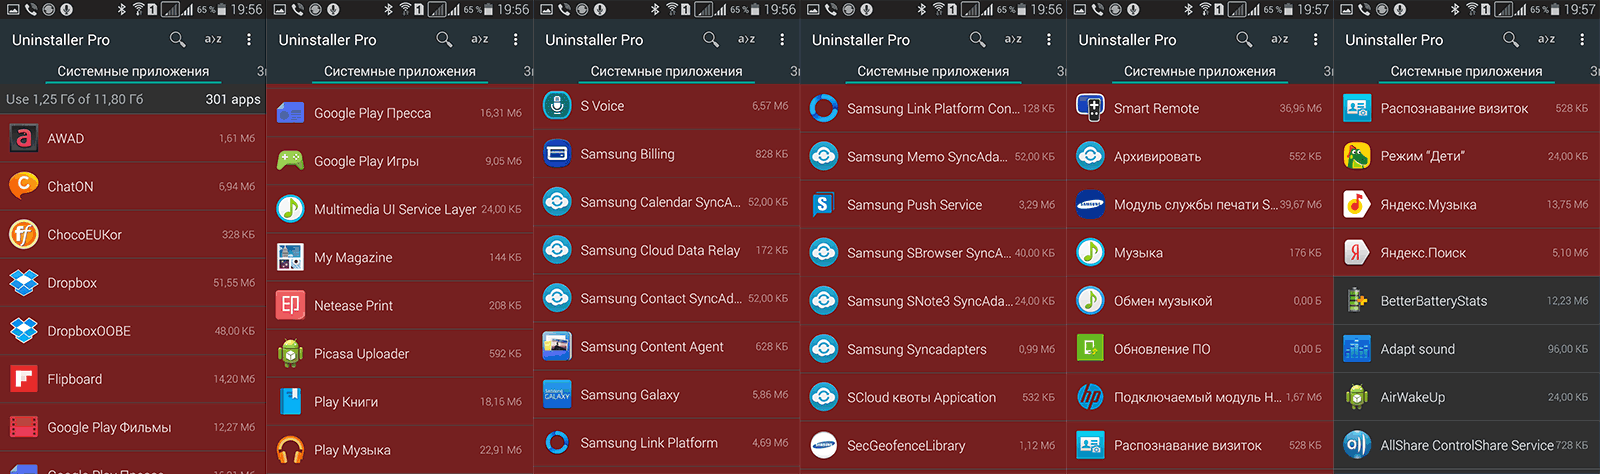 Красным отмечены все "замороженные" программы в S5 Duos на Android 4.4.2